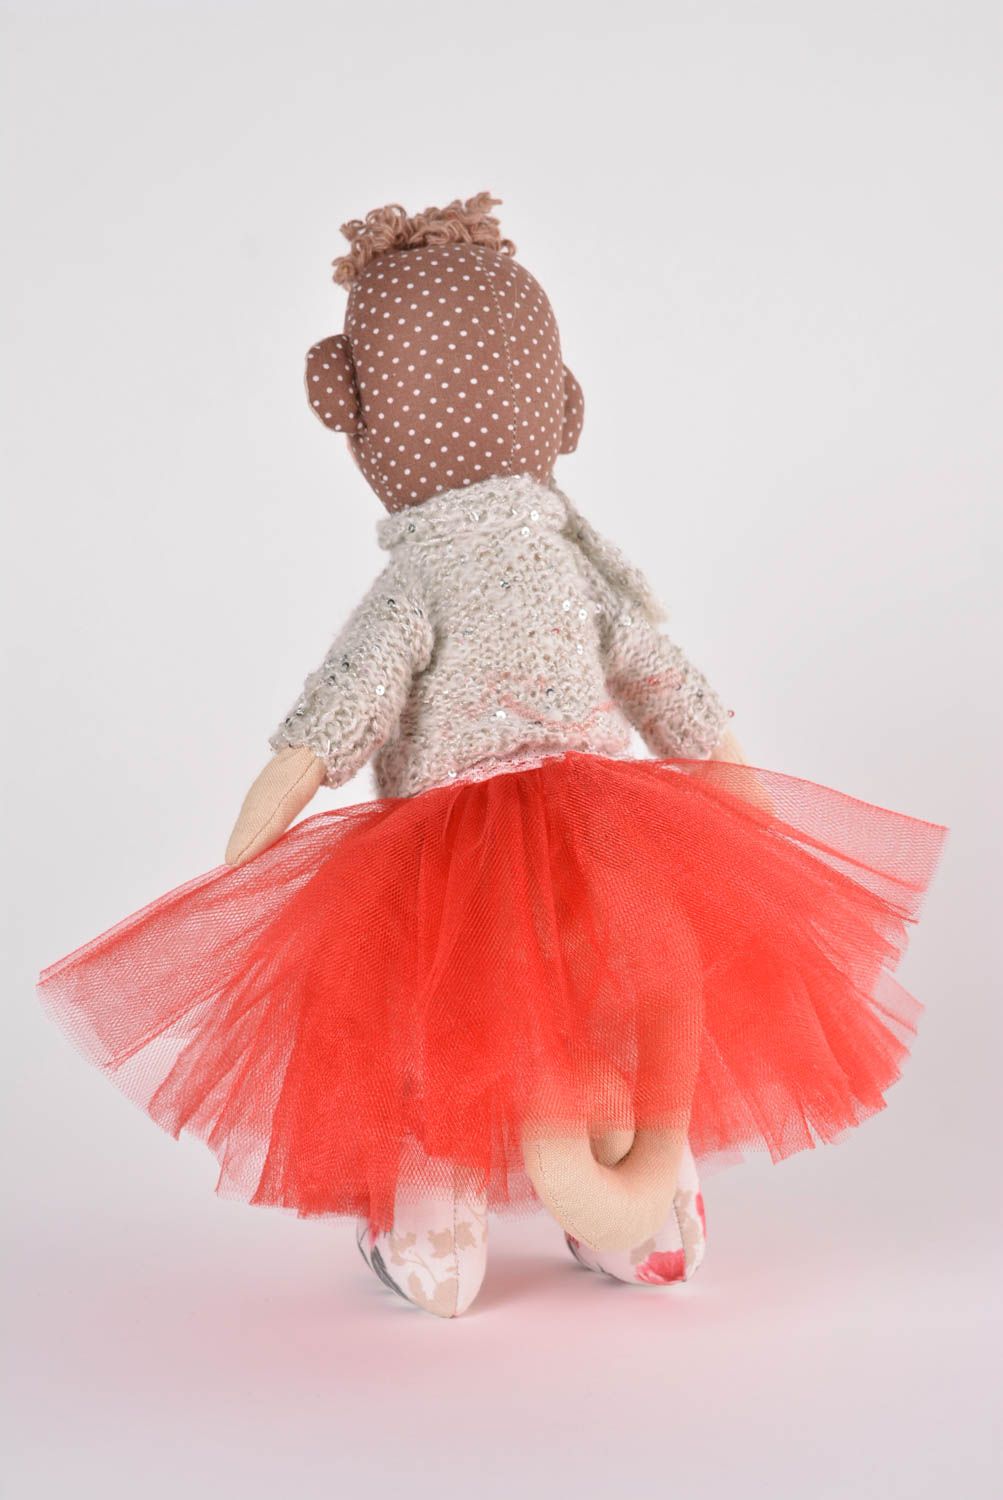 Игрушка обезьянка ручной работы детская игрушка из ткани мягкая игрушка фото 3